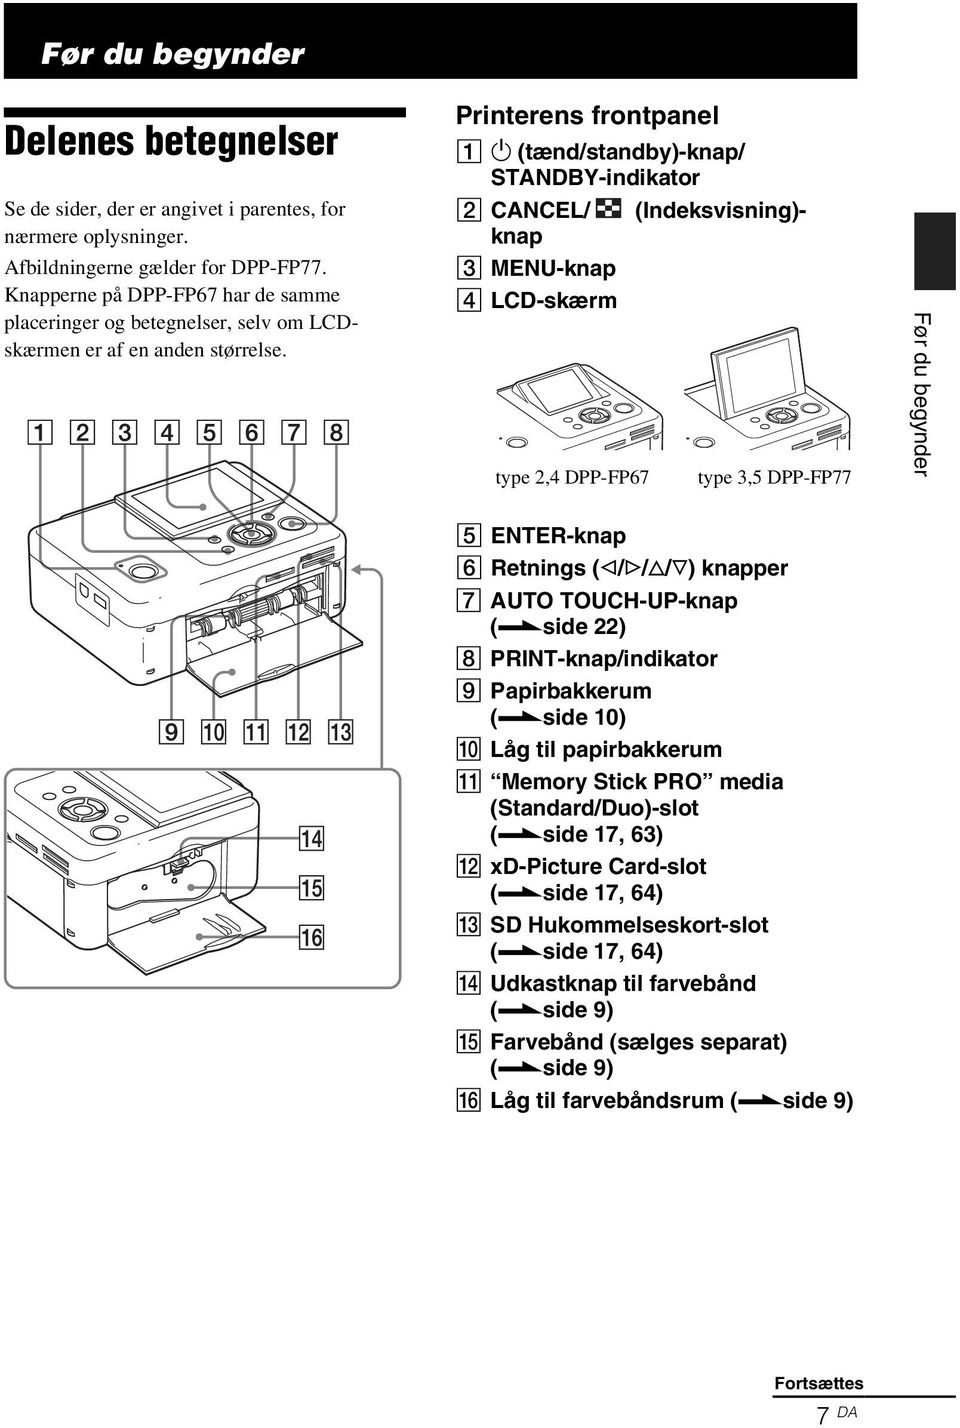 Printerens frontpanel A 1 (tænd/standby)-knap/ STANDBY-indikator B CANCEL/ (Indeksvisning)- knap C MENU-knap D LCD-skærm type 2,4 DPP-FP67 type 3,5 DPP-FP77 Før du begynder E ENTER-knap F Retnings